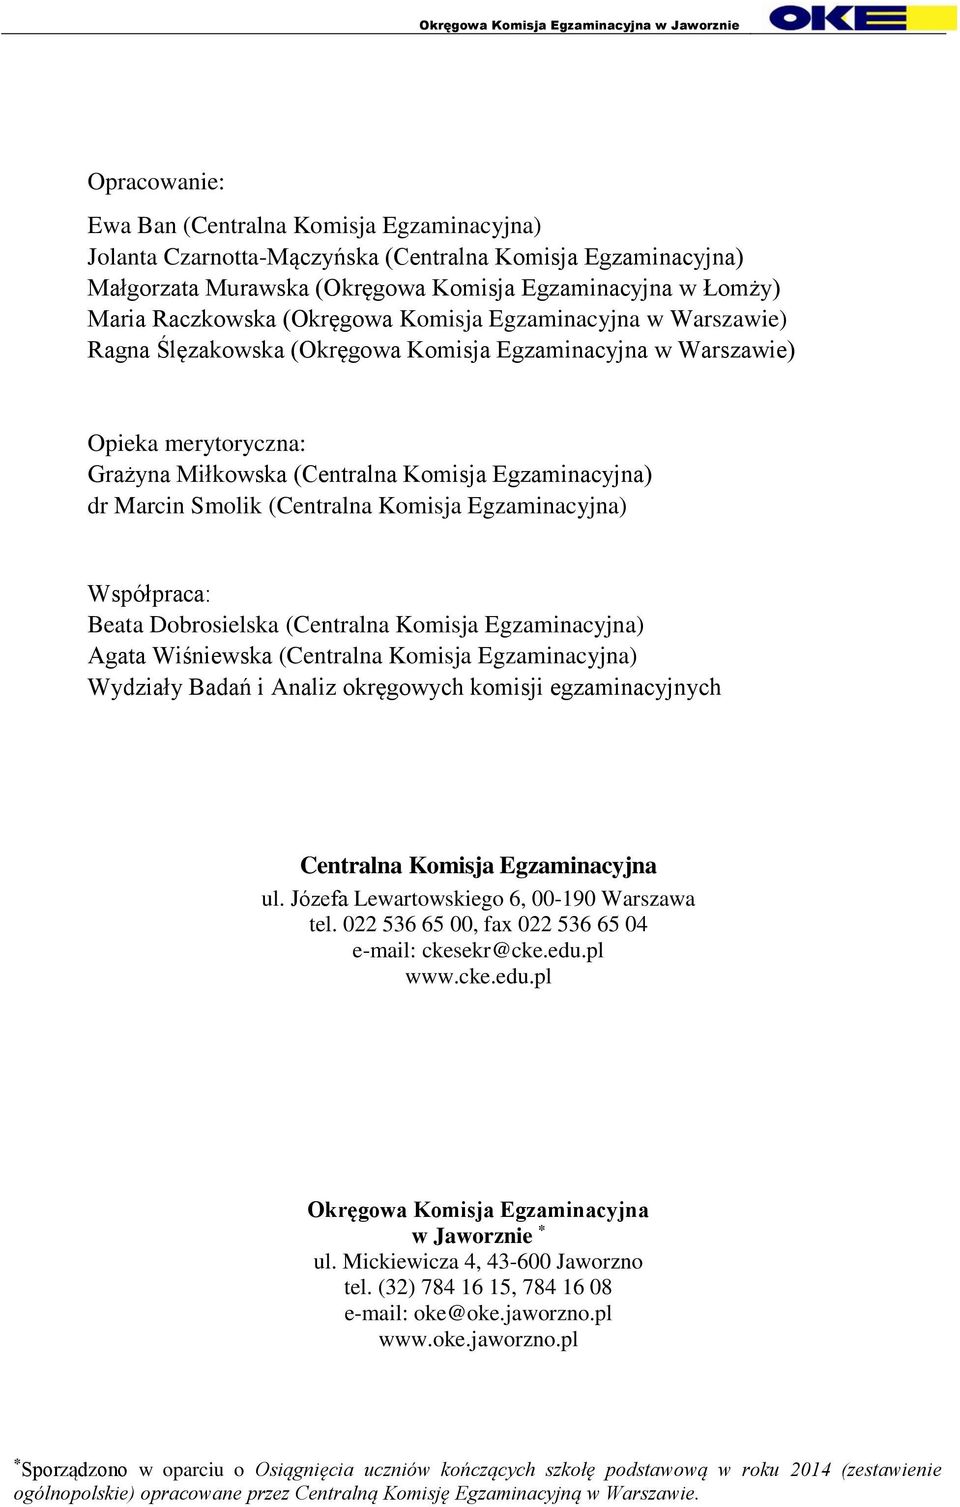 (Centralna Komisja Egzaminacyjna) Współpraca: Beata Dobrosielska (Centralna Komisja Egzaminacyjna) Agata Wiśniewska (Centralna Komisja Egzaminacyjna) Wydziały Badań i Analiz okręgowych komisji